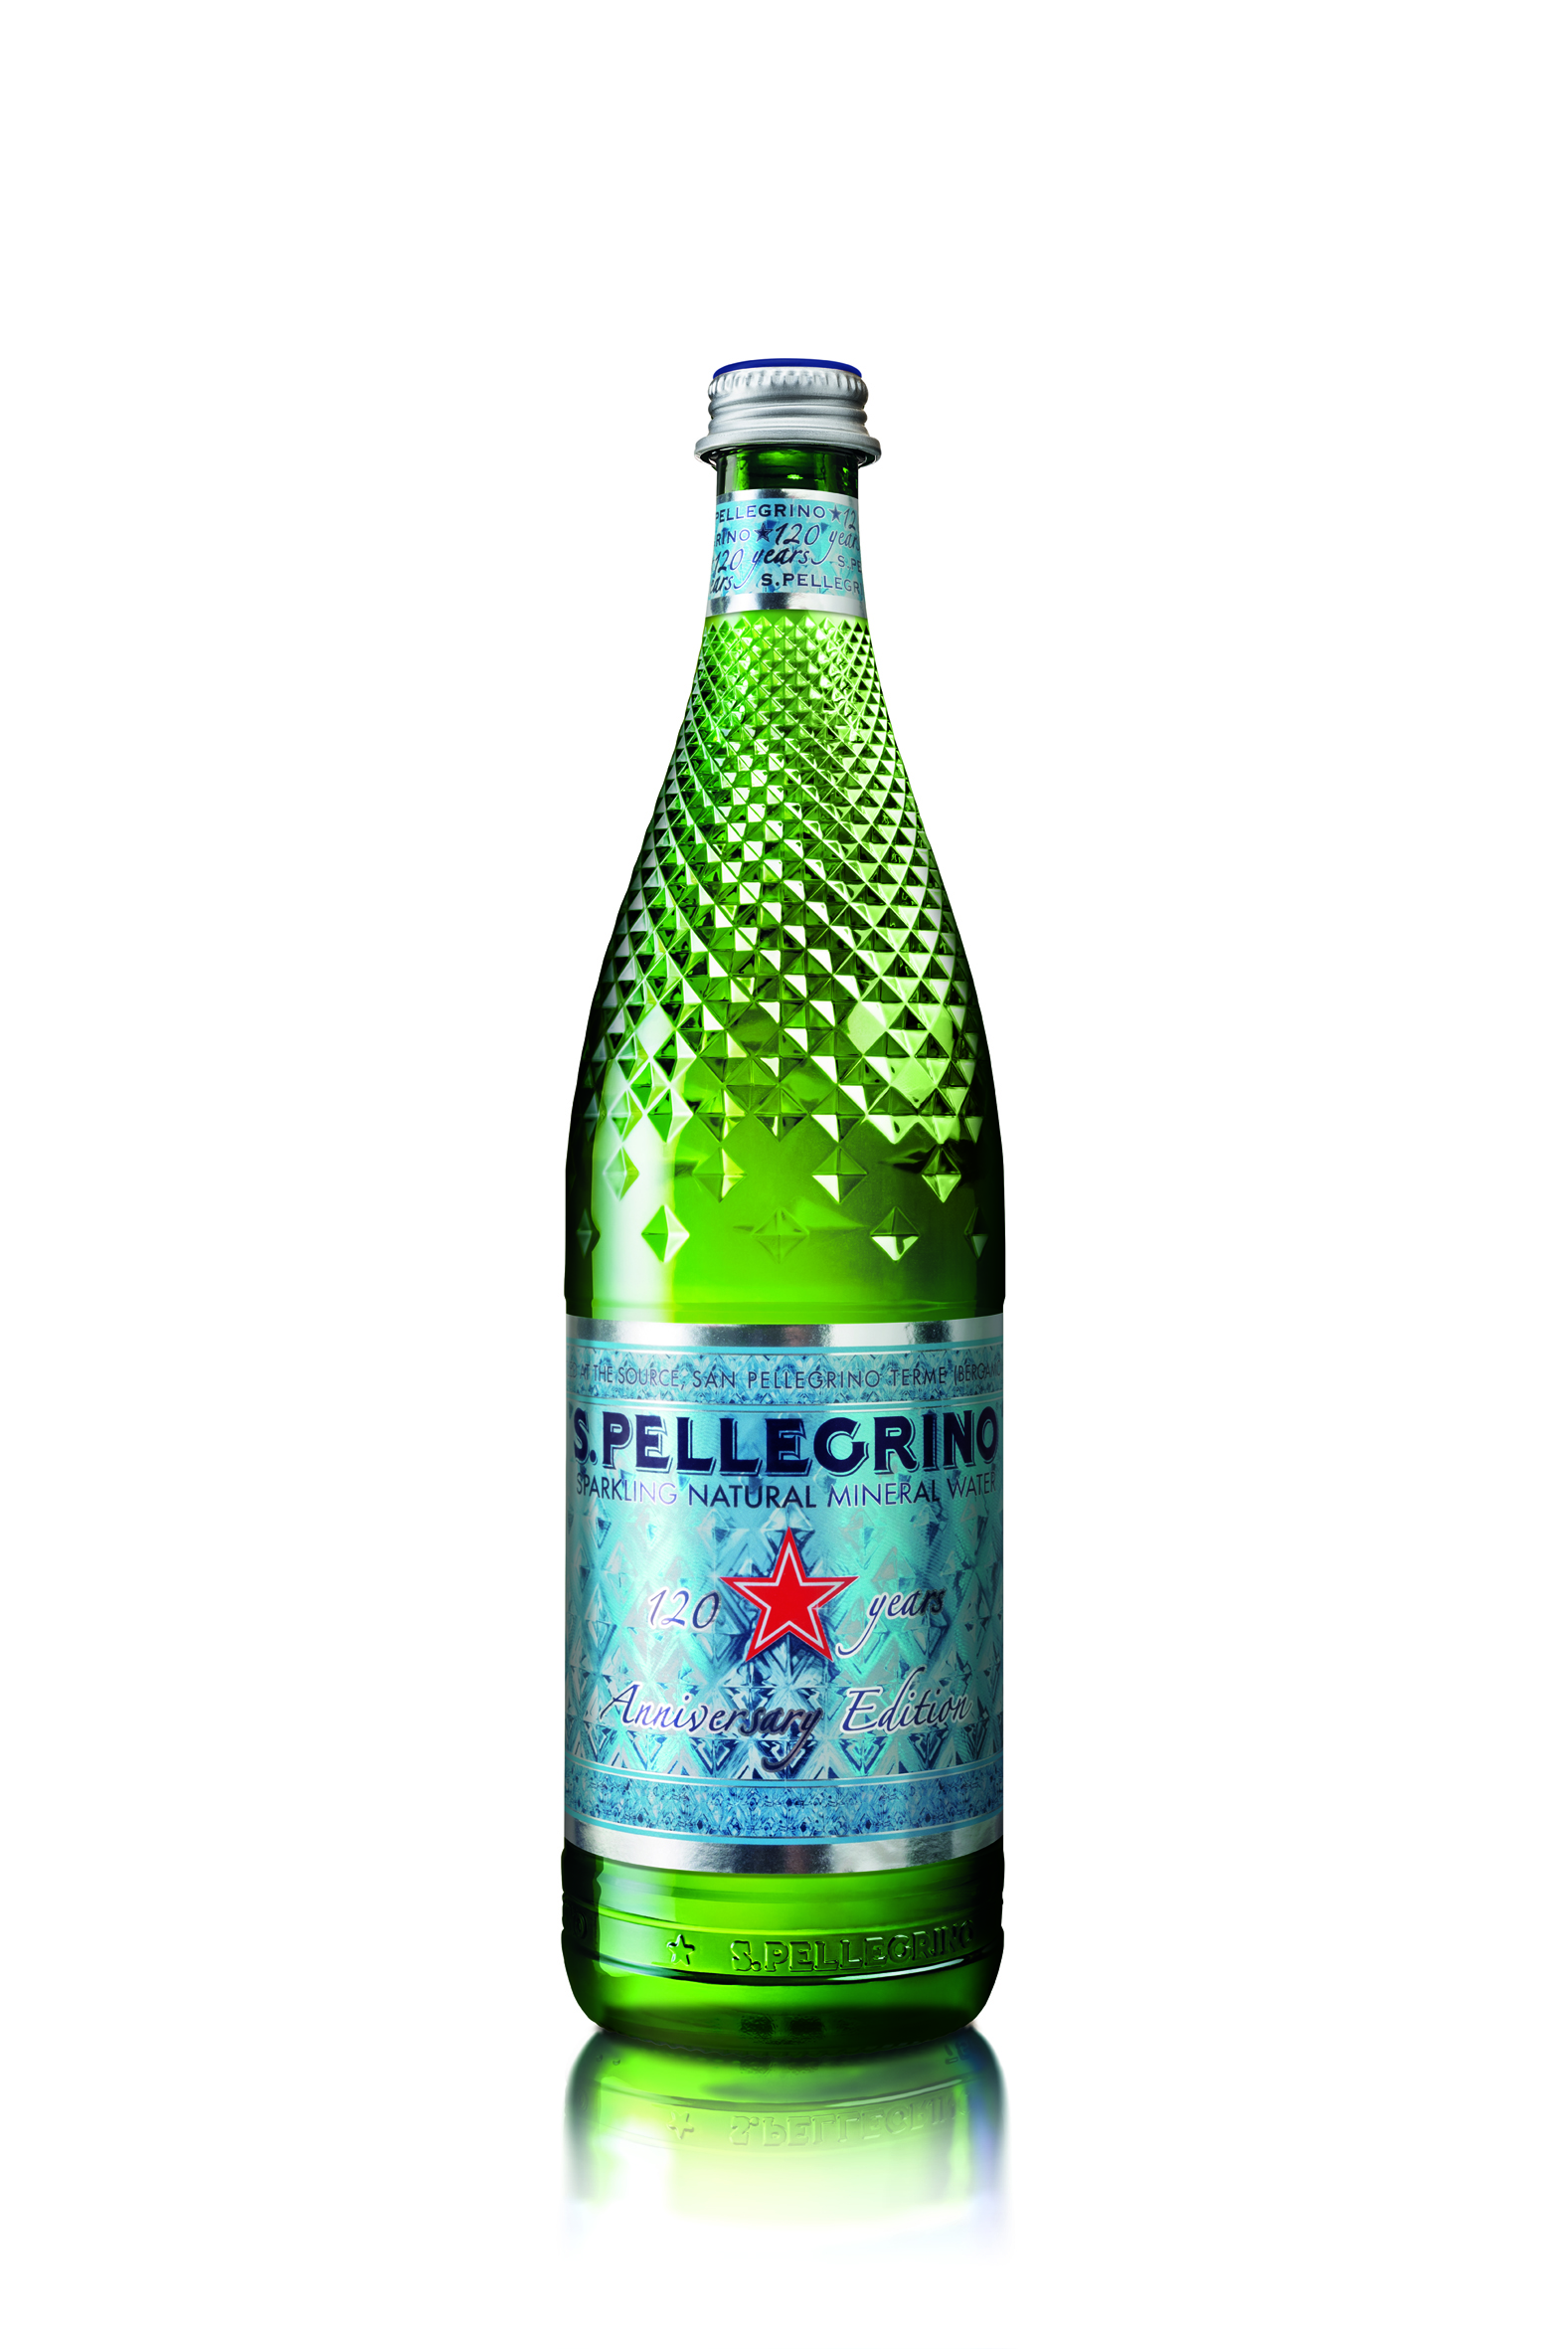 S.Pellegrino unveils 120th anniversary restaurant bottle Caterer